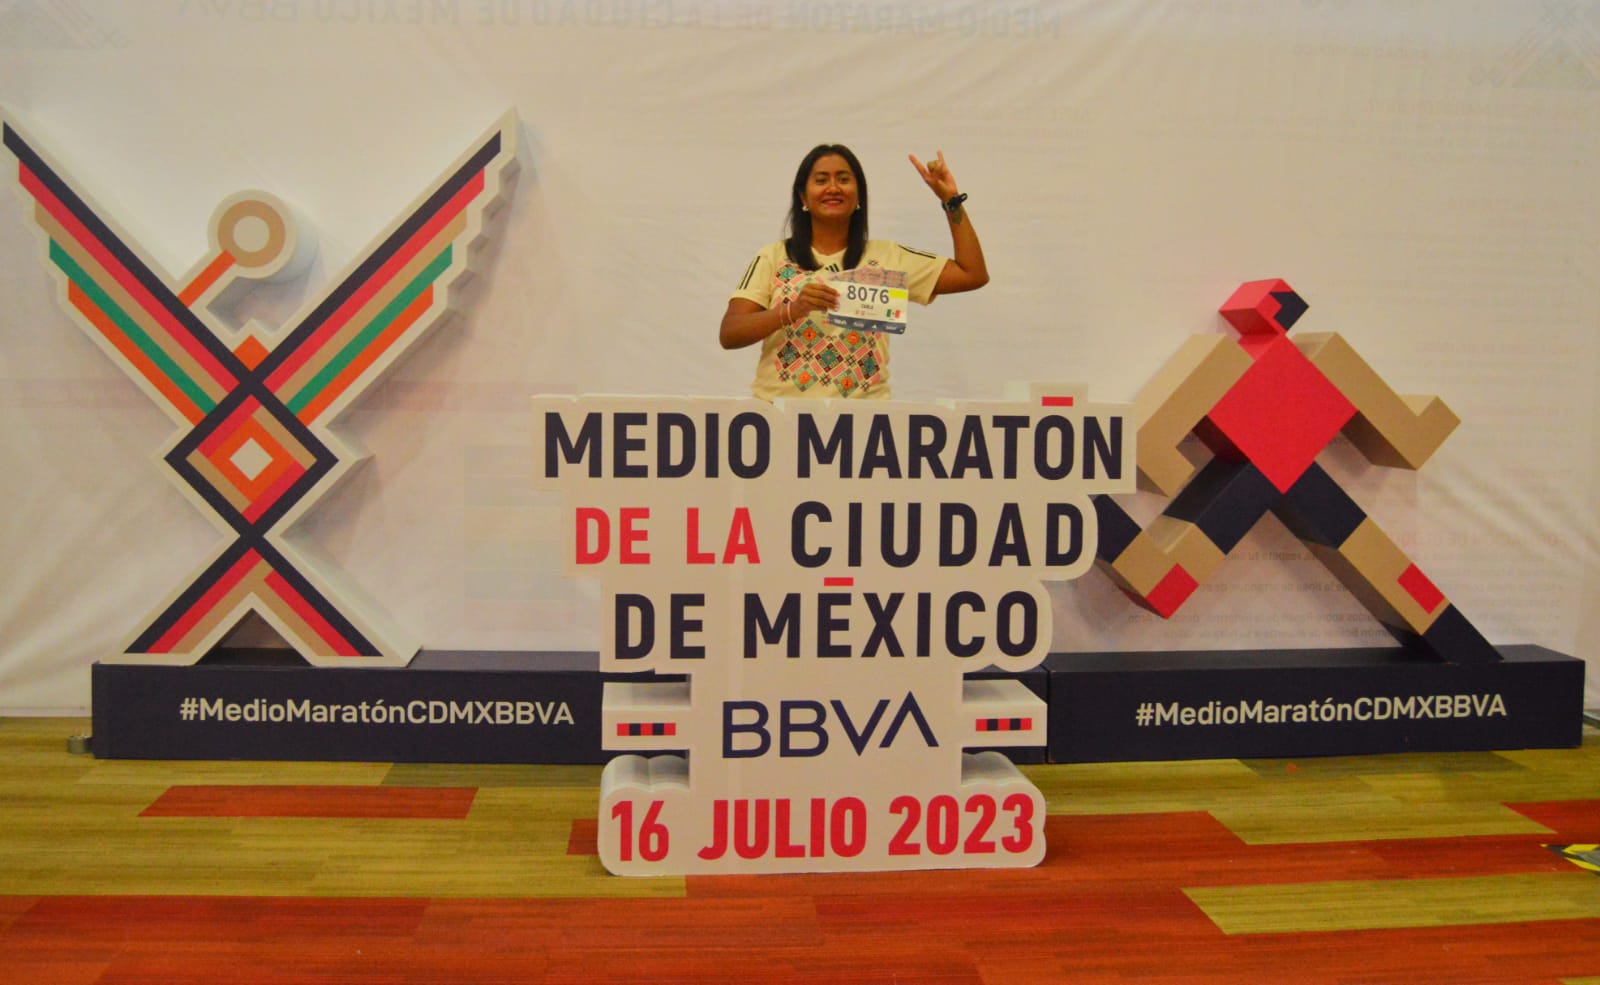 FOTO DE:Medio Maratón de la Ciudad de México BBVA @21KCDMX Twitter